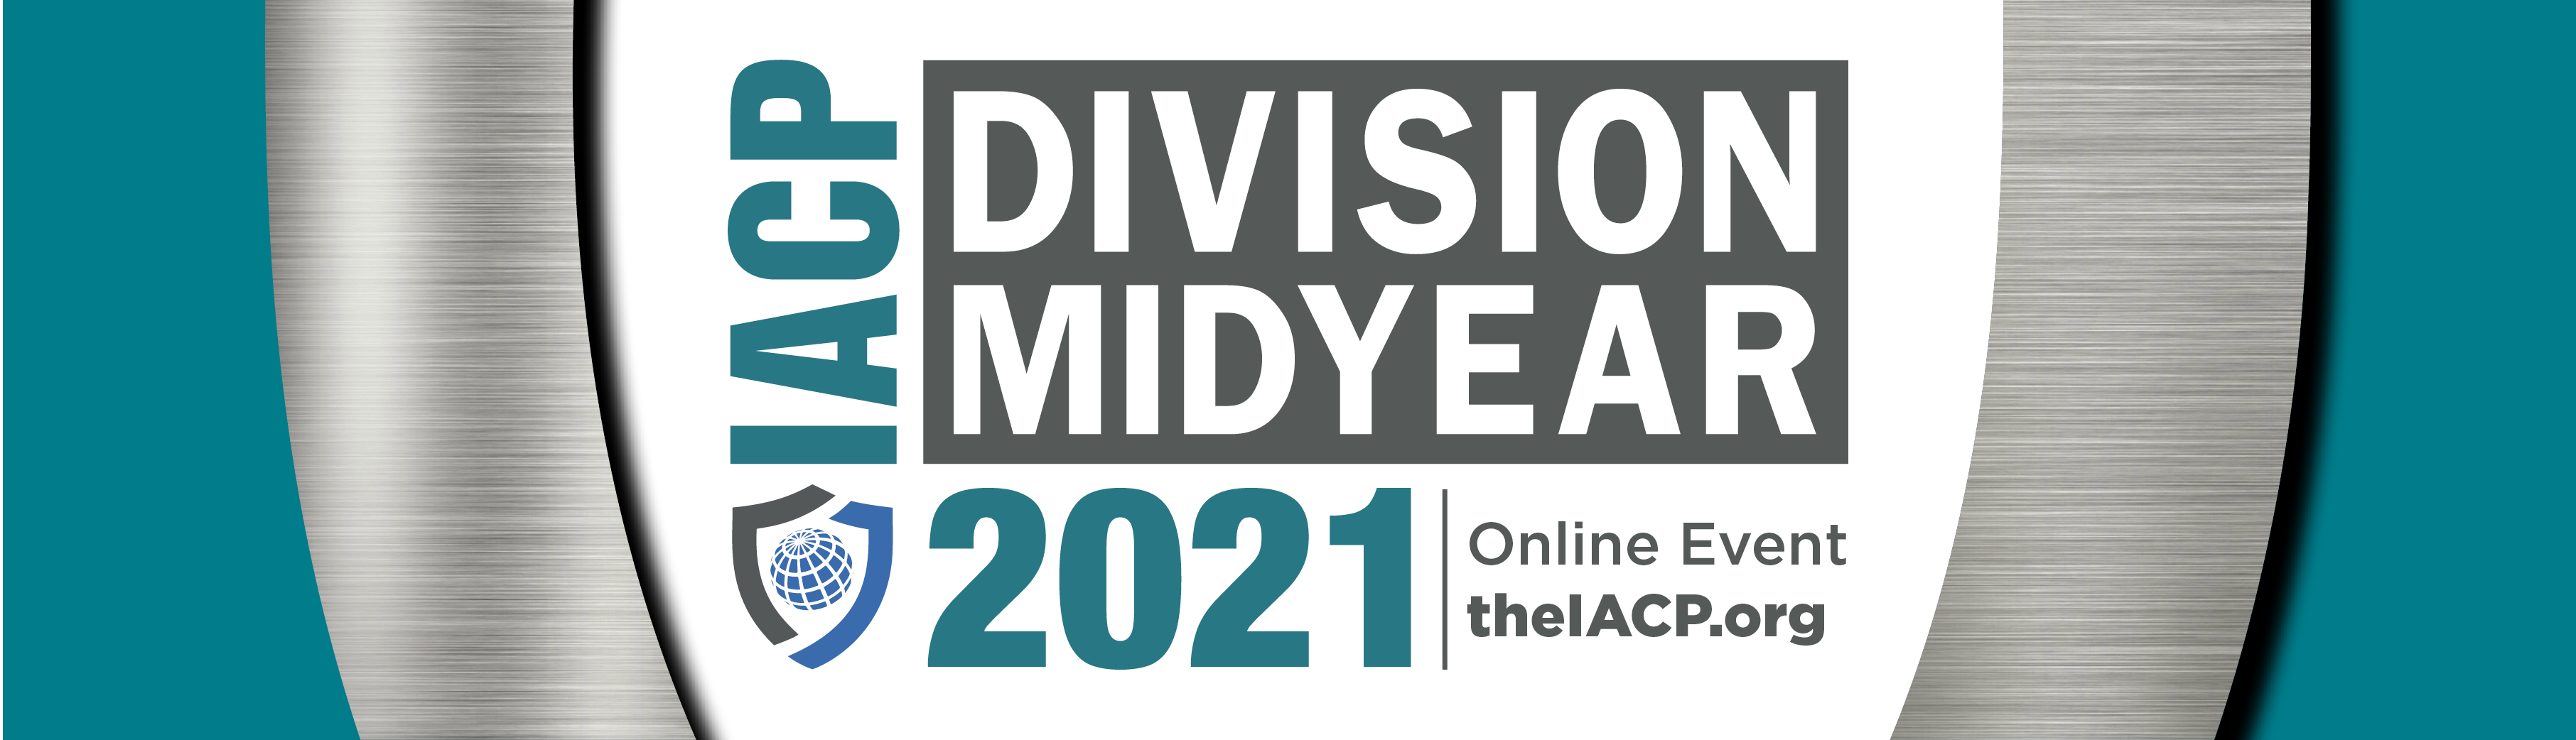 IACPlearn IACP 2021 Division Midyear